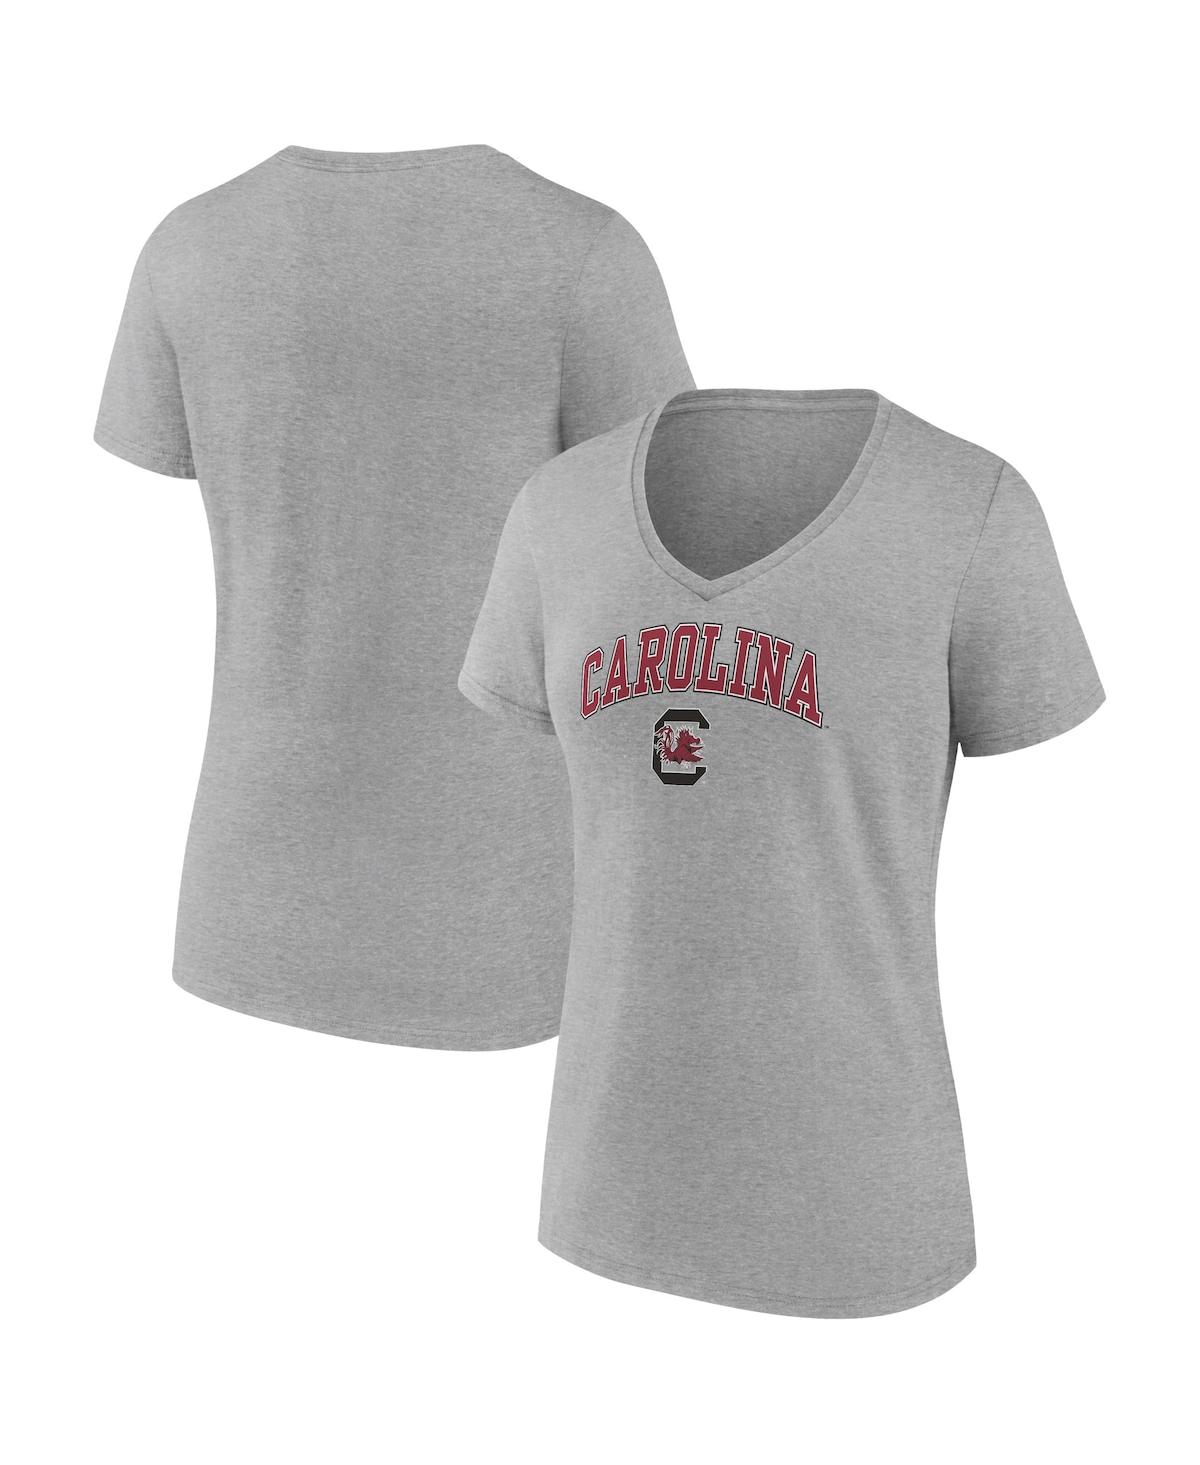 Fanatics Women's  Heather Gray South Carolina Gamecocks Evergreen Campus V-neck T-shirt